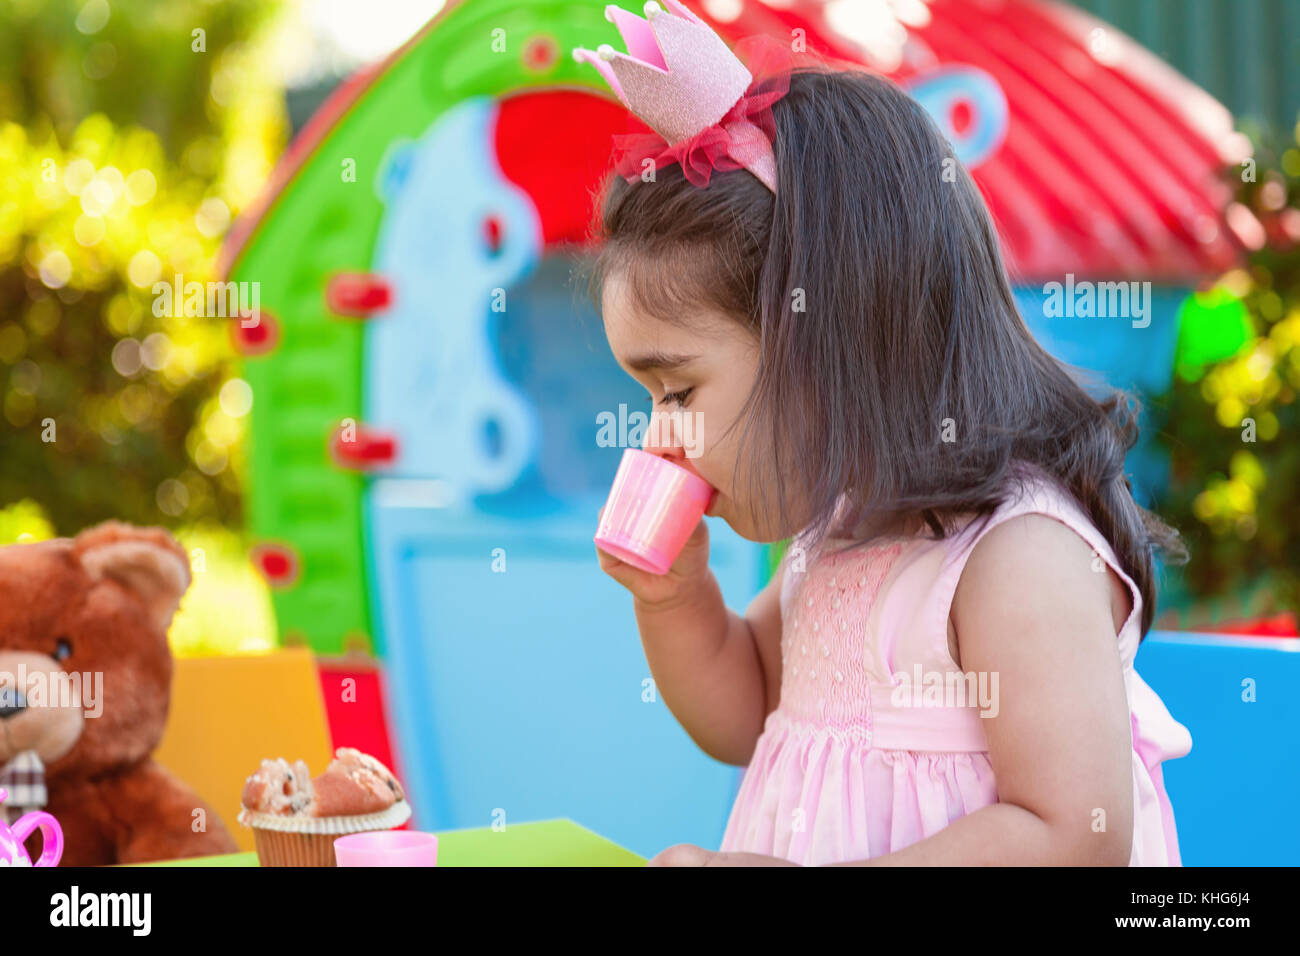 Baby girl playing tea party en plein air dans l'eau de tasse avec meilleur ami ours assis à table. robe rose et la reine ou princesse couronne Banque D'Images